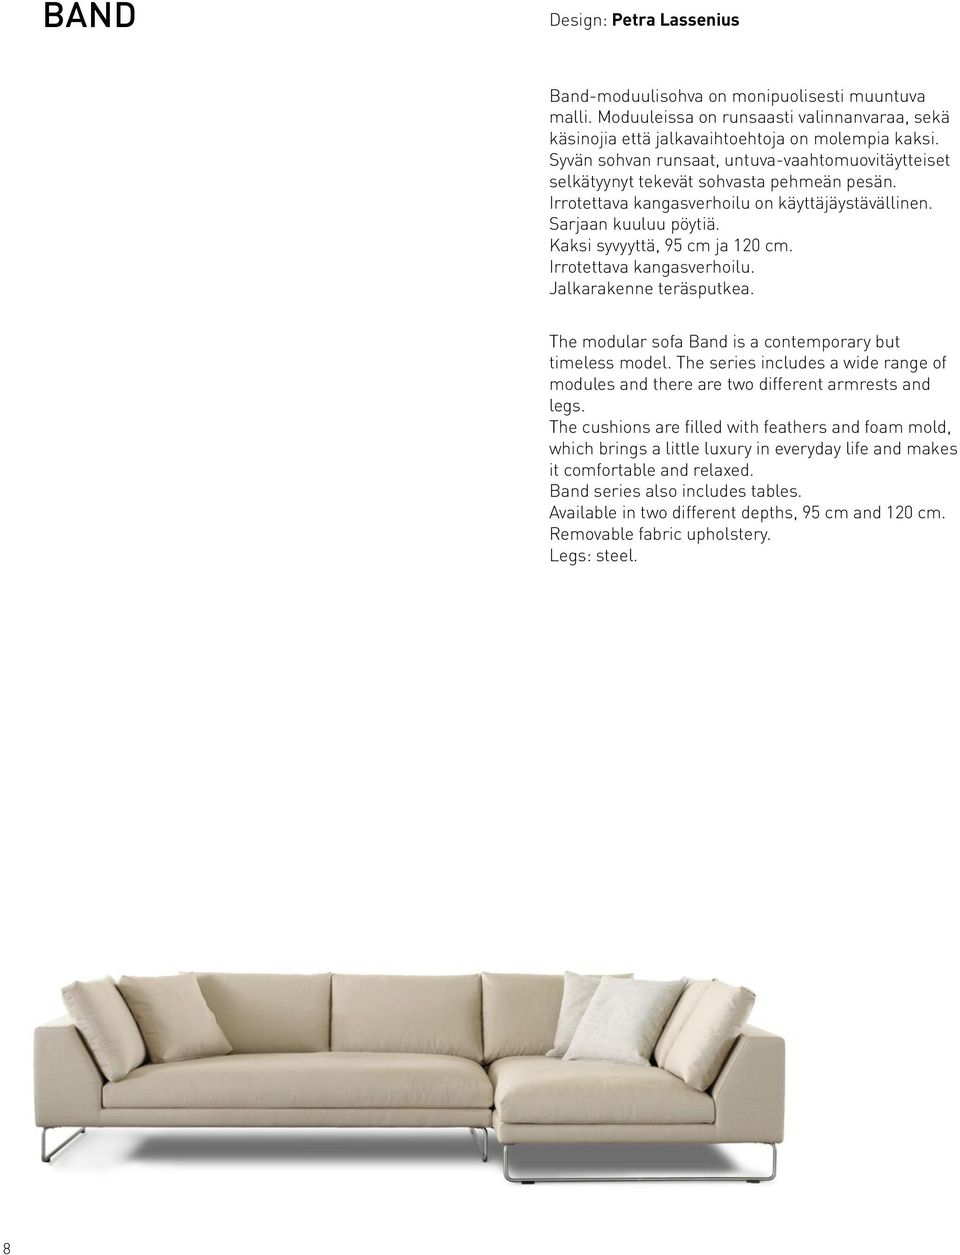 Kaksi syvyyttä, 95 cm ja 120 cm. Irrotettava kangasverhoilu. Jalkarakenne teräsputkea. The modular sofa Band is a contemporary but timeless model.